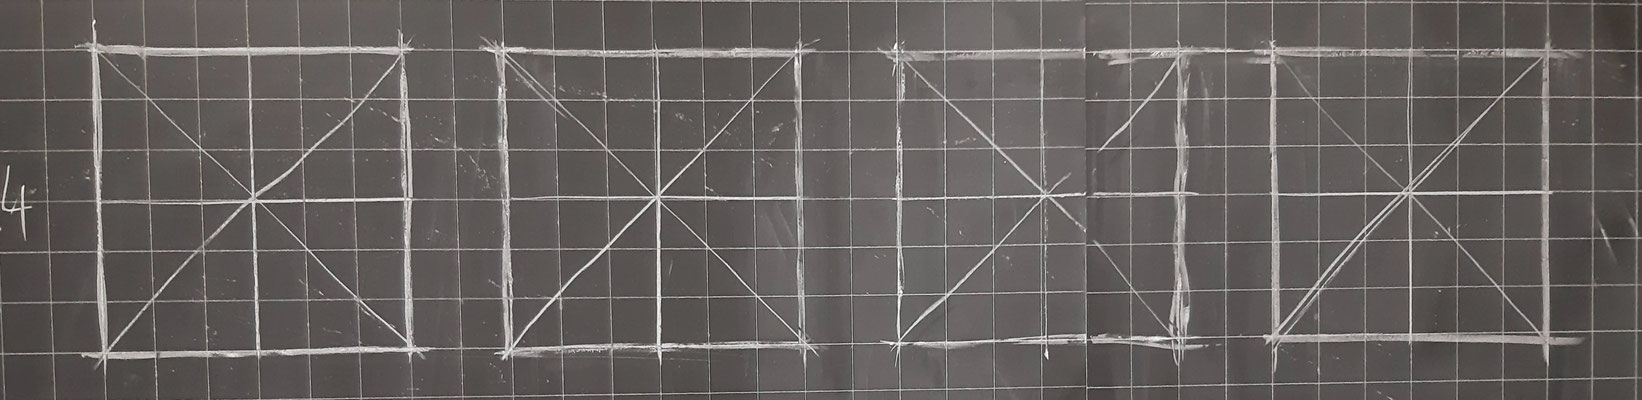 Fase3. Copio i quadrati e traccio le diagonali e le linee verticali e orizzontali.